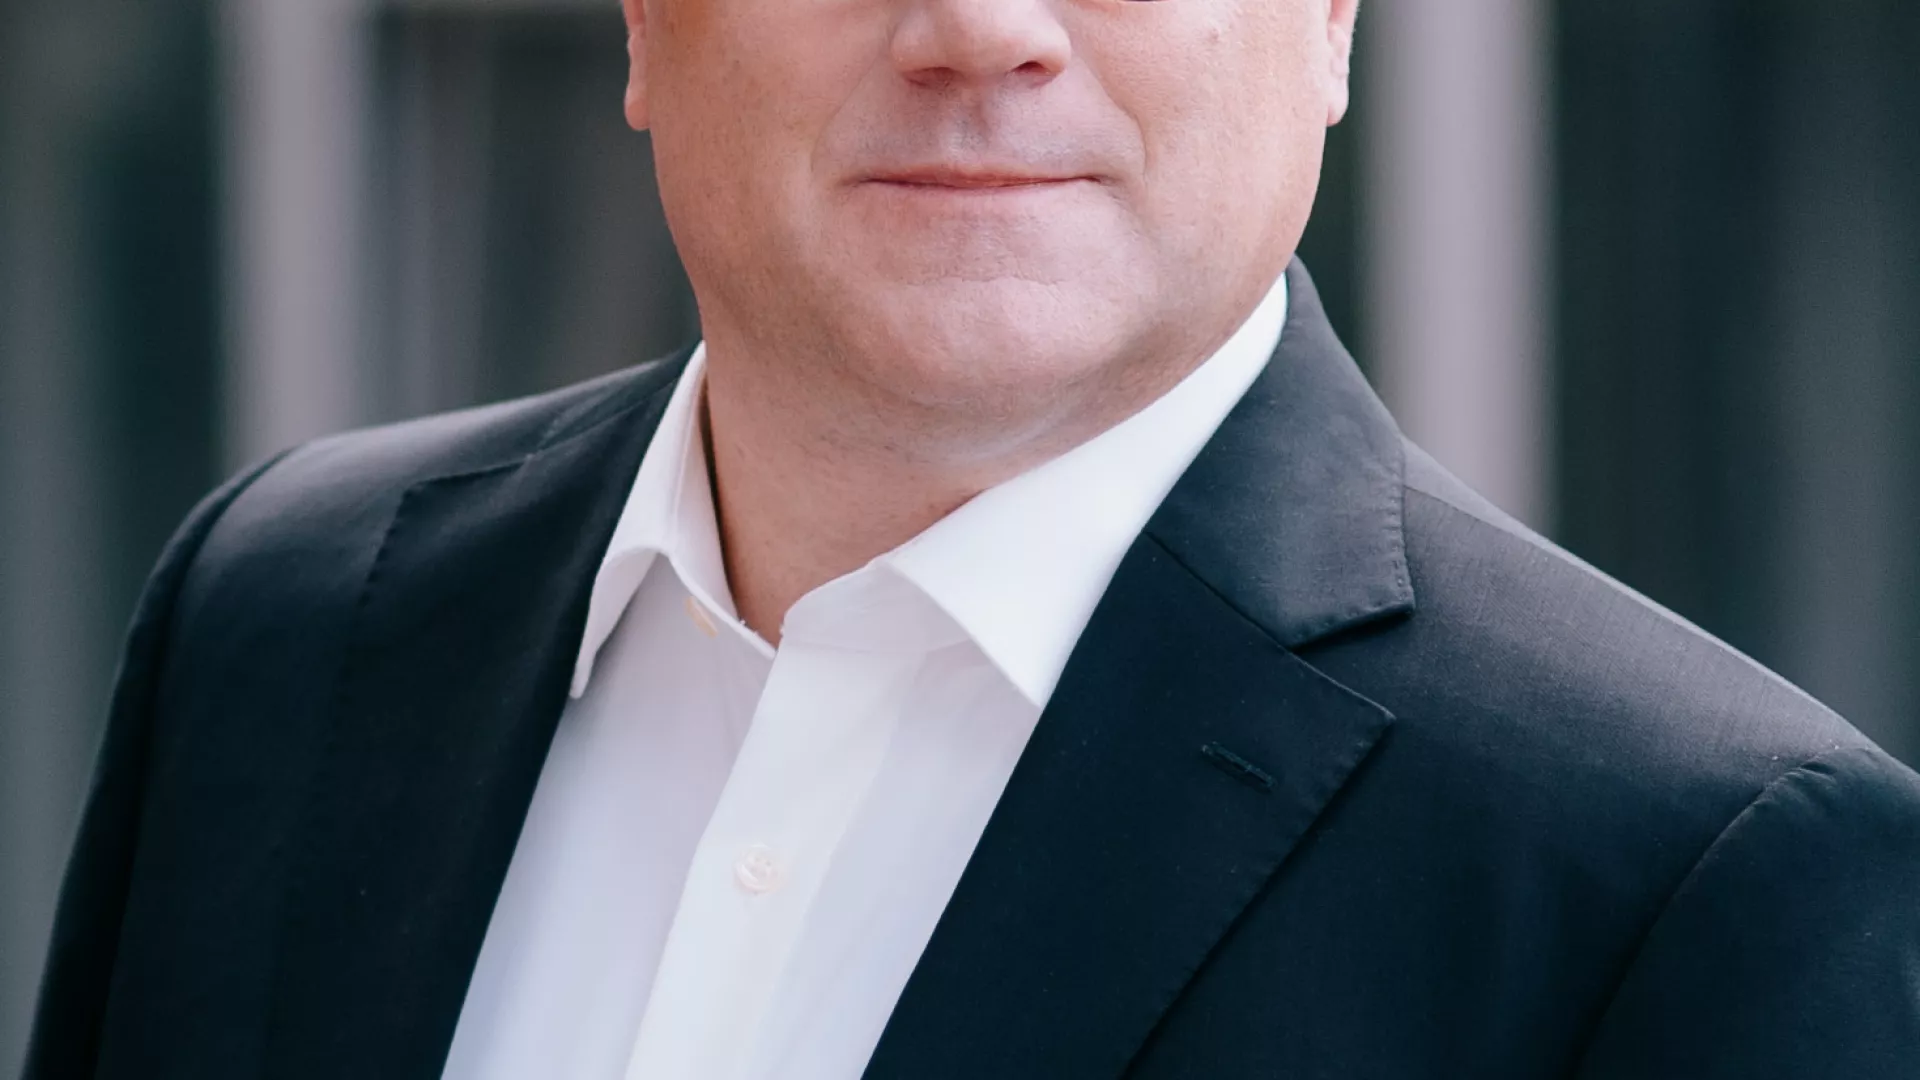 Thomas Augat (CFO der SENEC GmbH) in schwarzem Anzug von Nahem